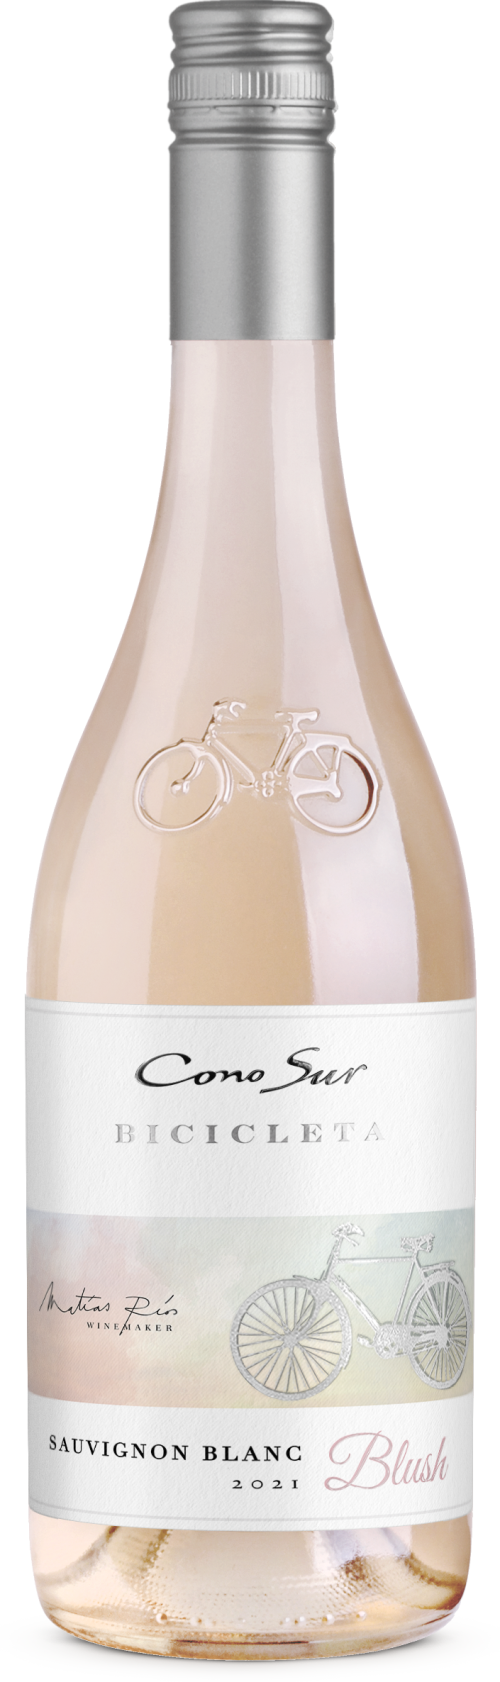 Cono Sur launches new Sauvignon Blanc Blush